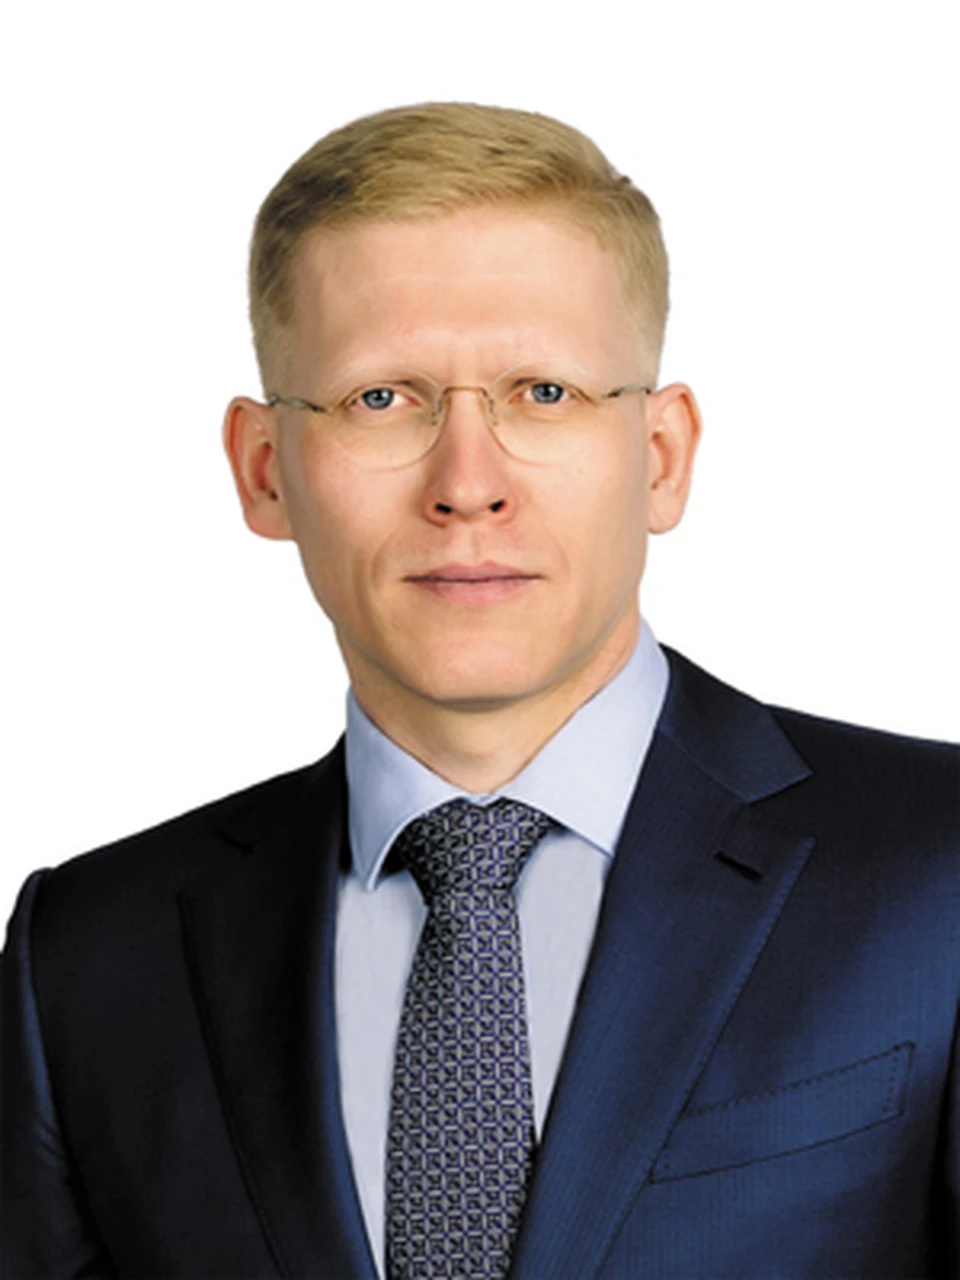 Исполняющим полномочия председателя Гордумы Нижнего Новгорода избран Евгений Костин.